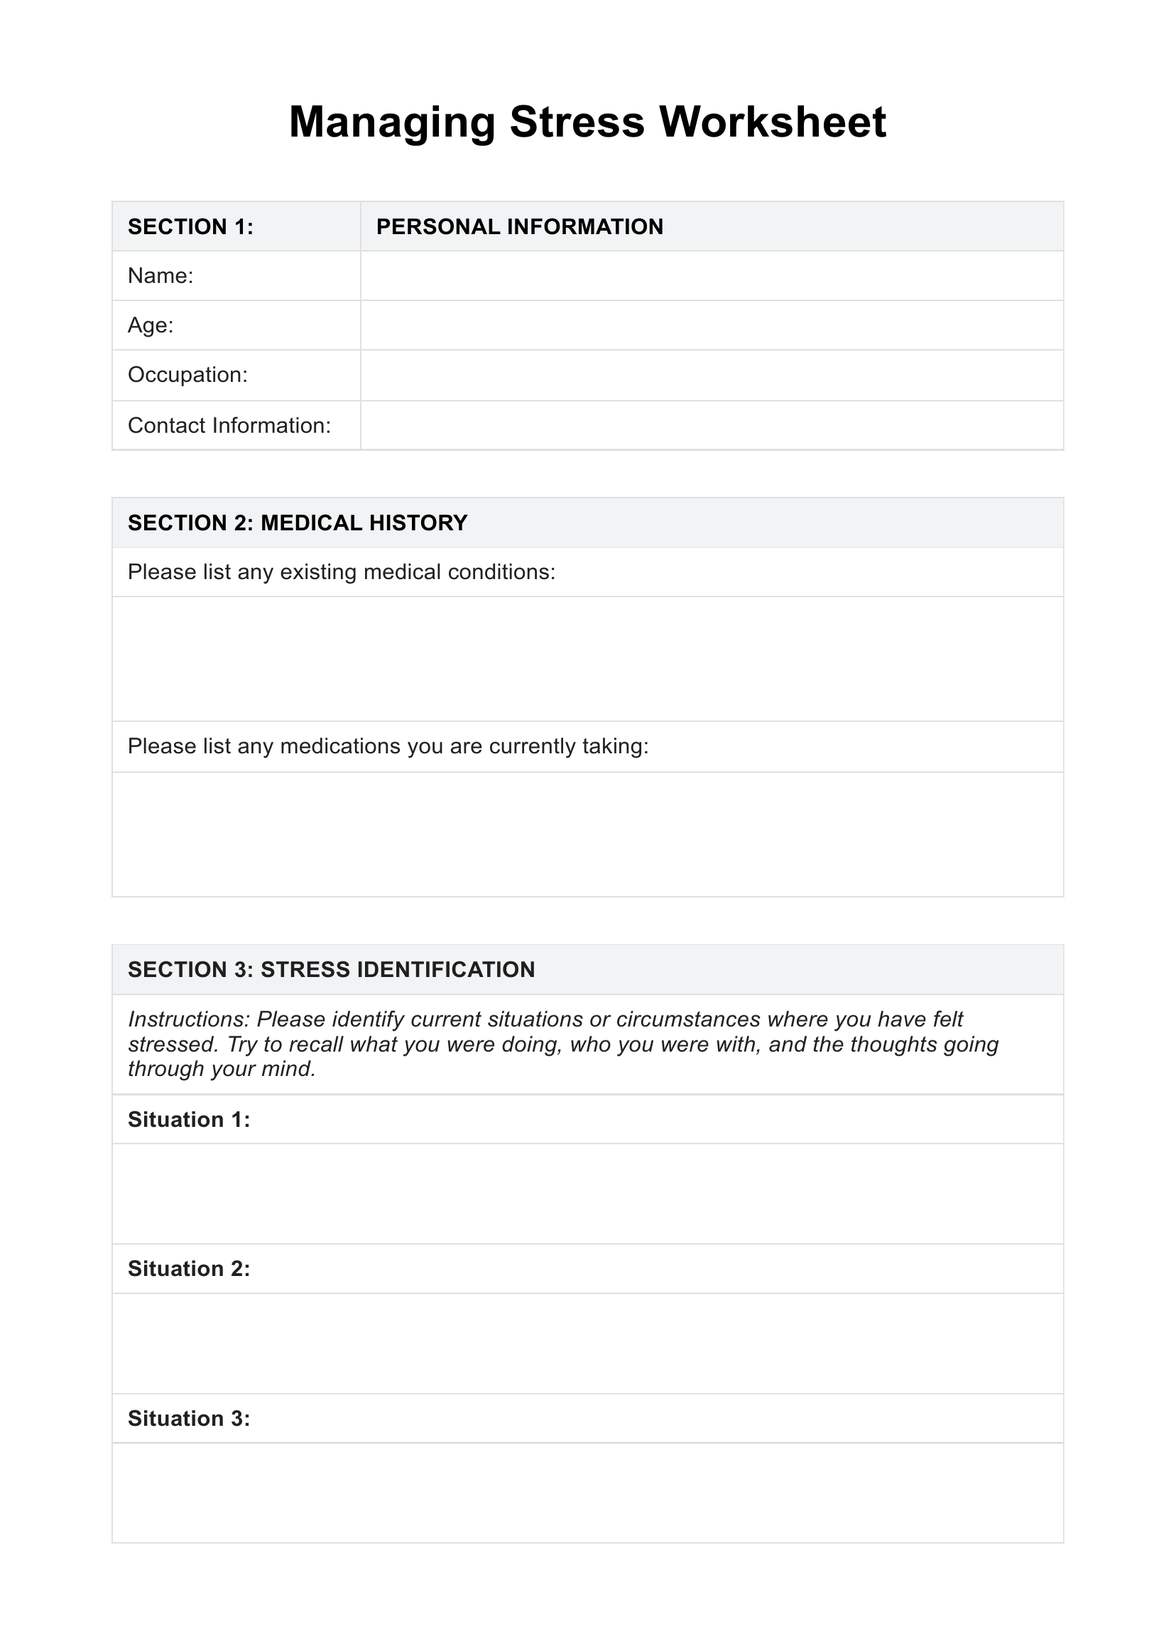 Managing Stress Worksheet PDF Example